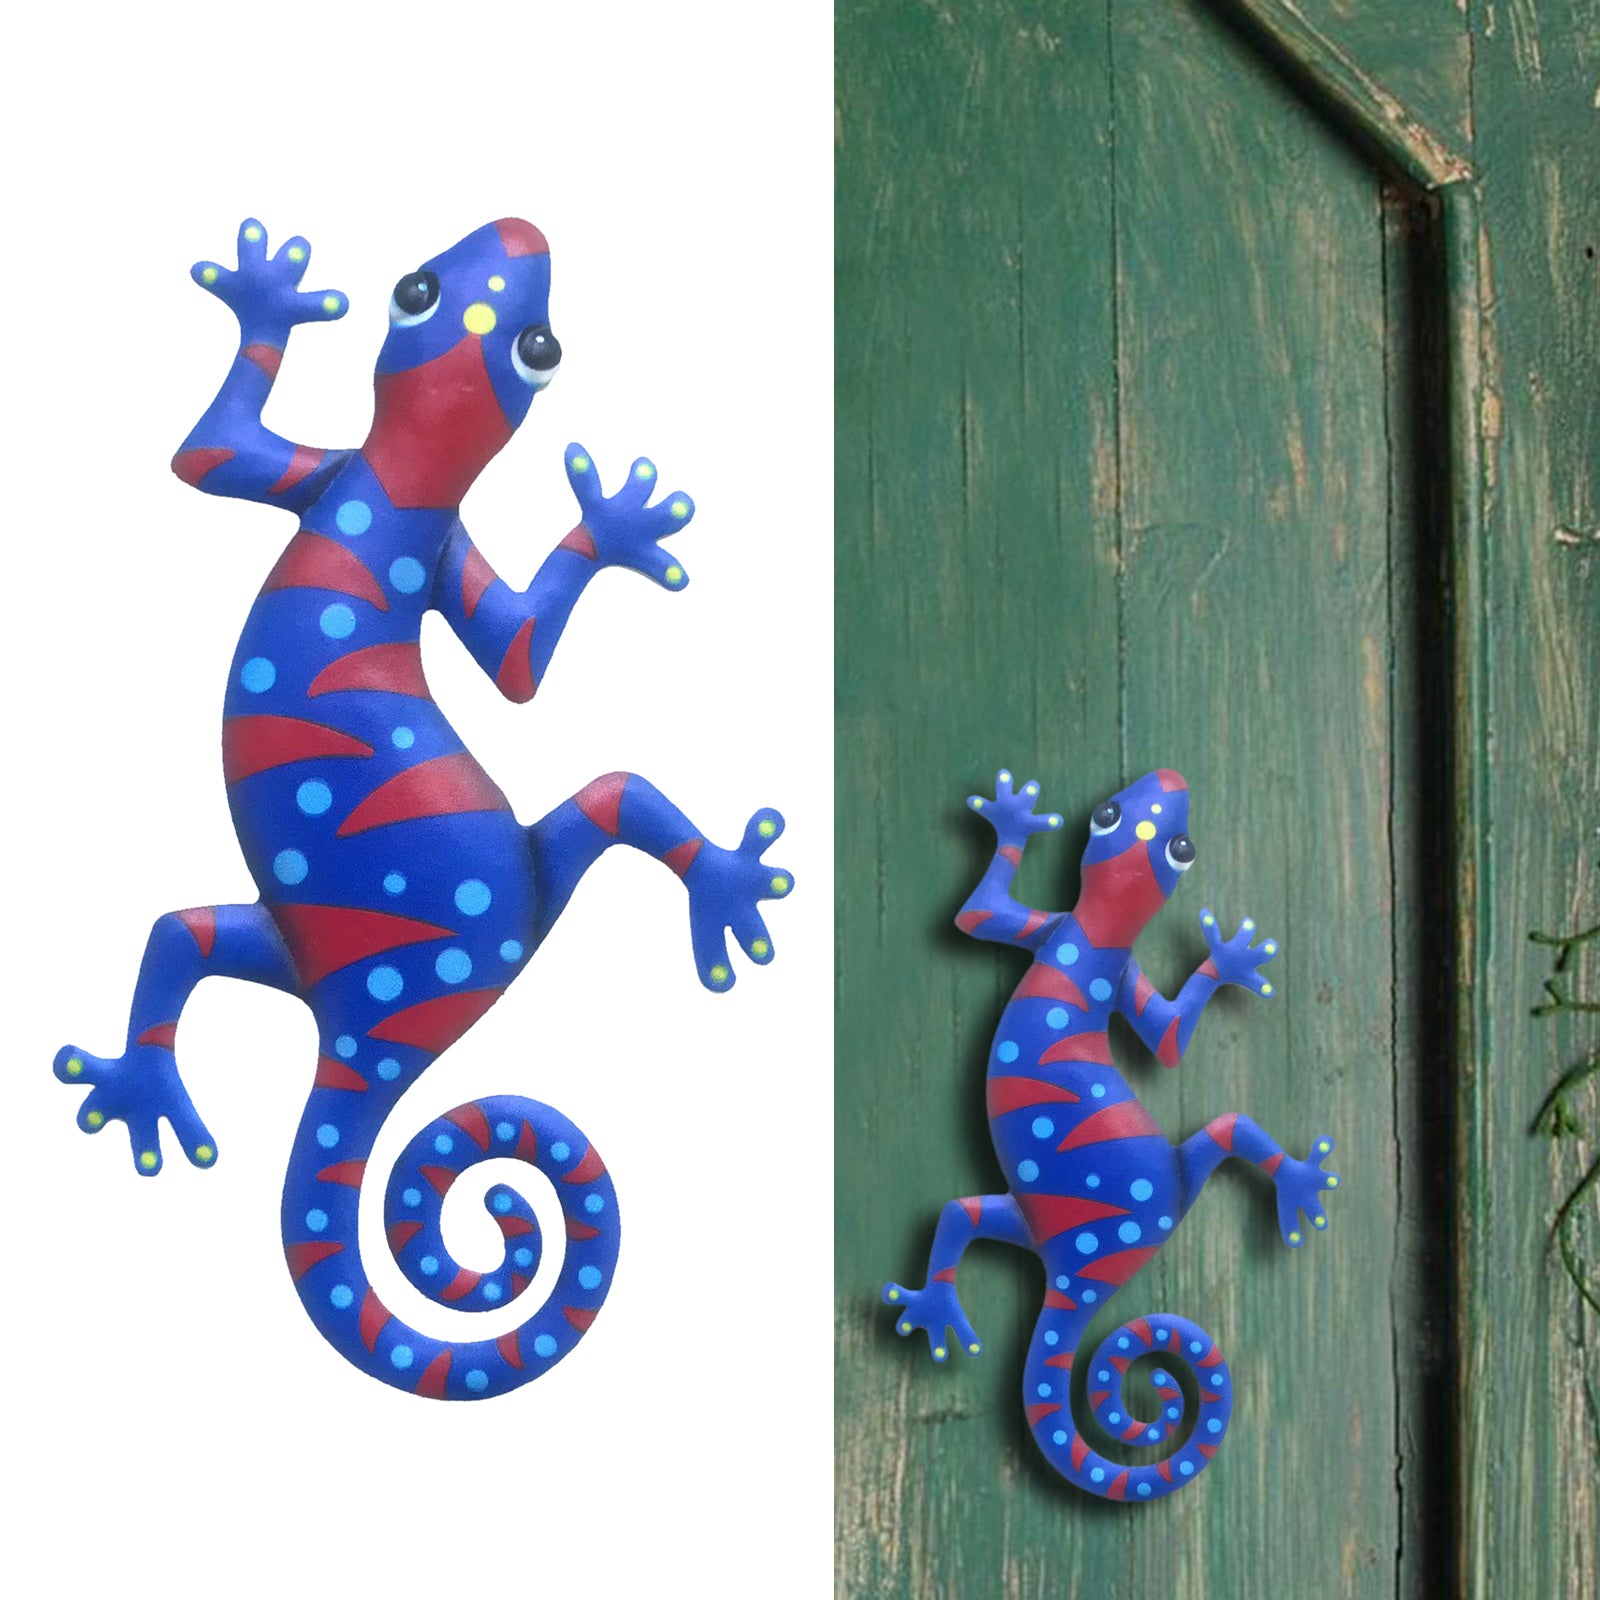 Metal Gecko Wall Decor Lizard Hang for Home Garden Patio Fence Ornament blue 3